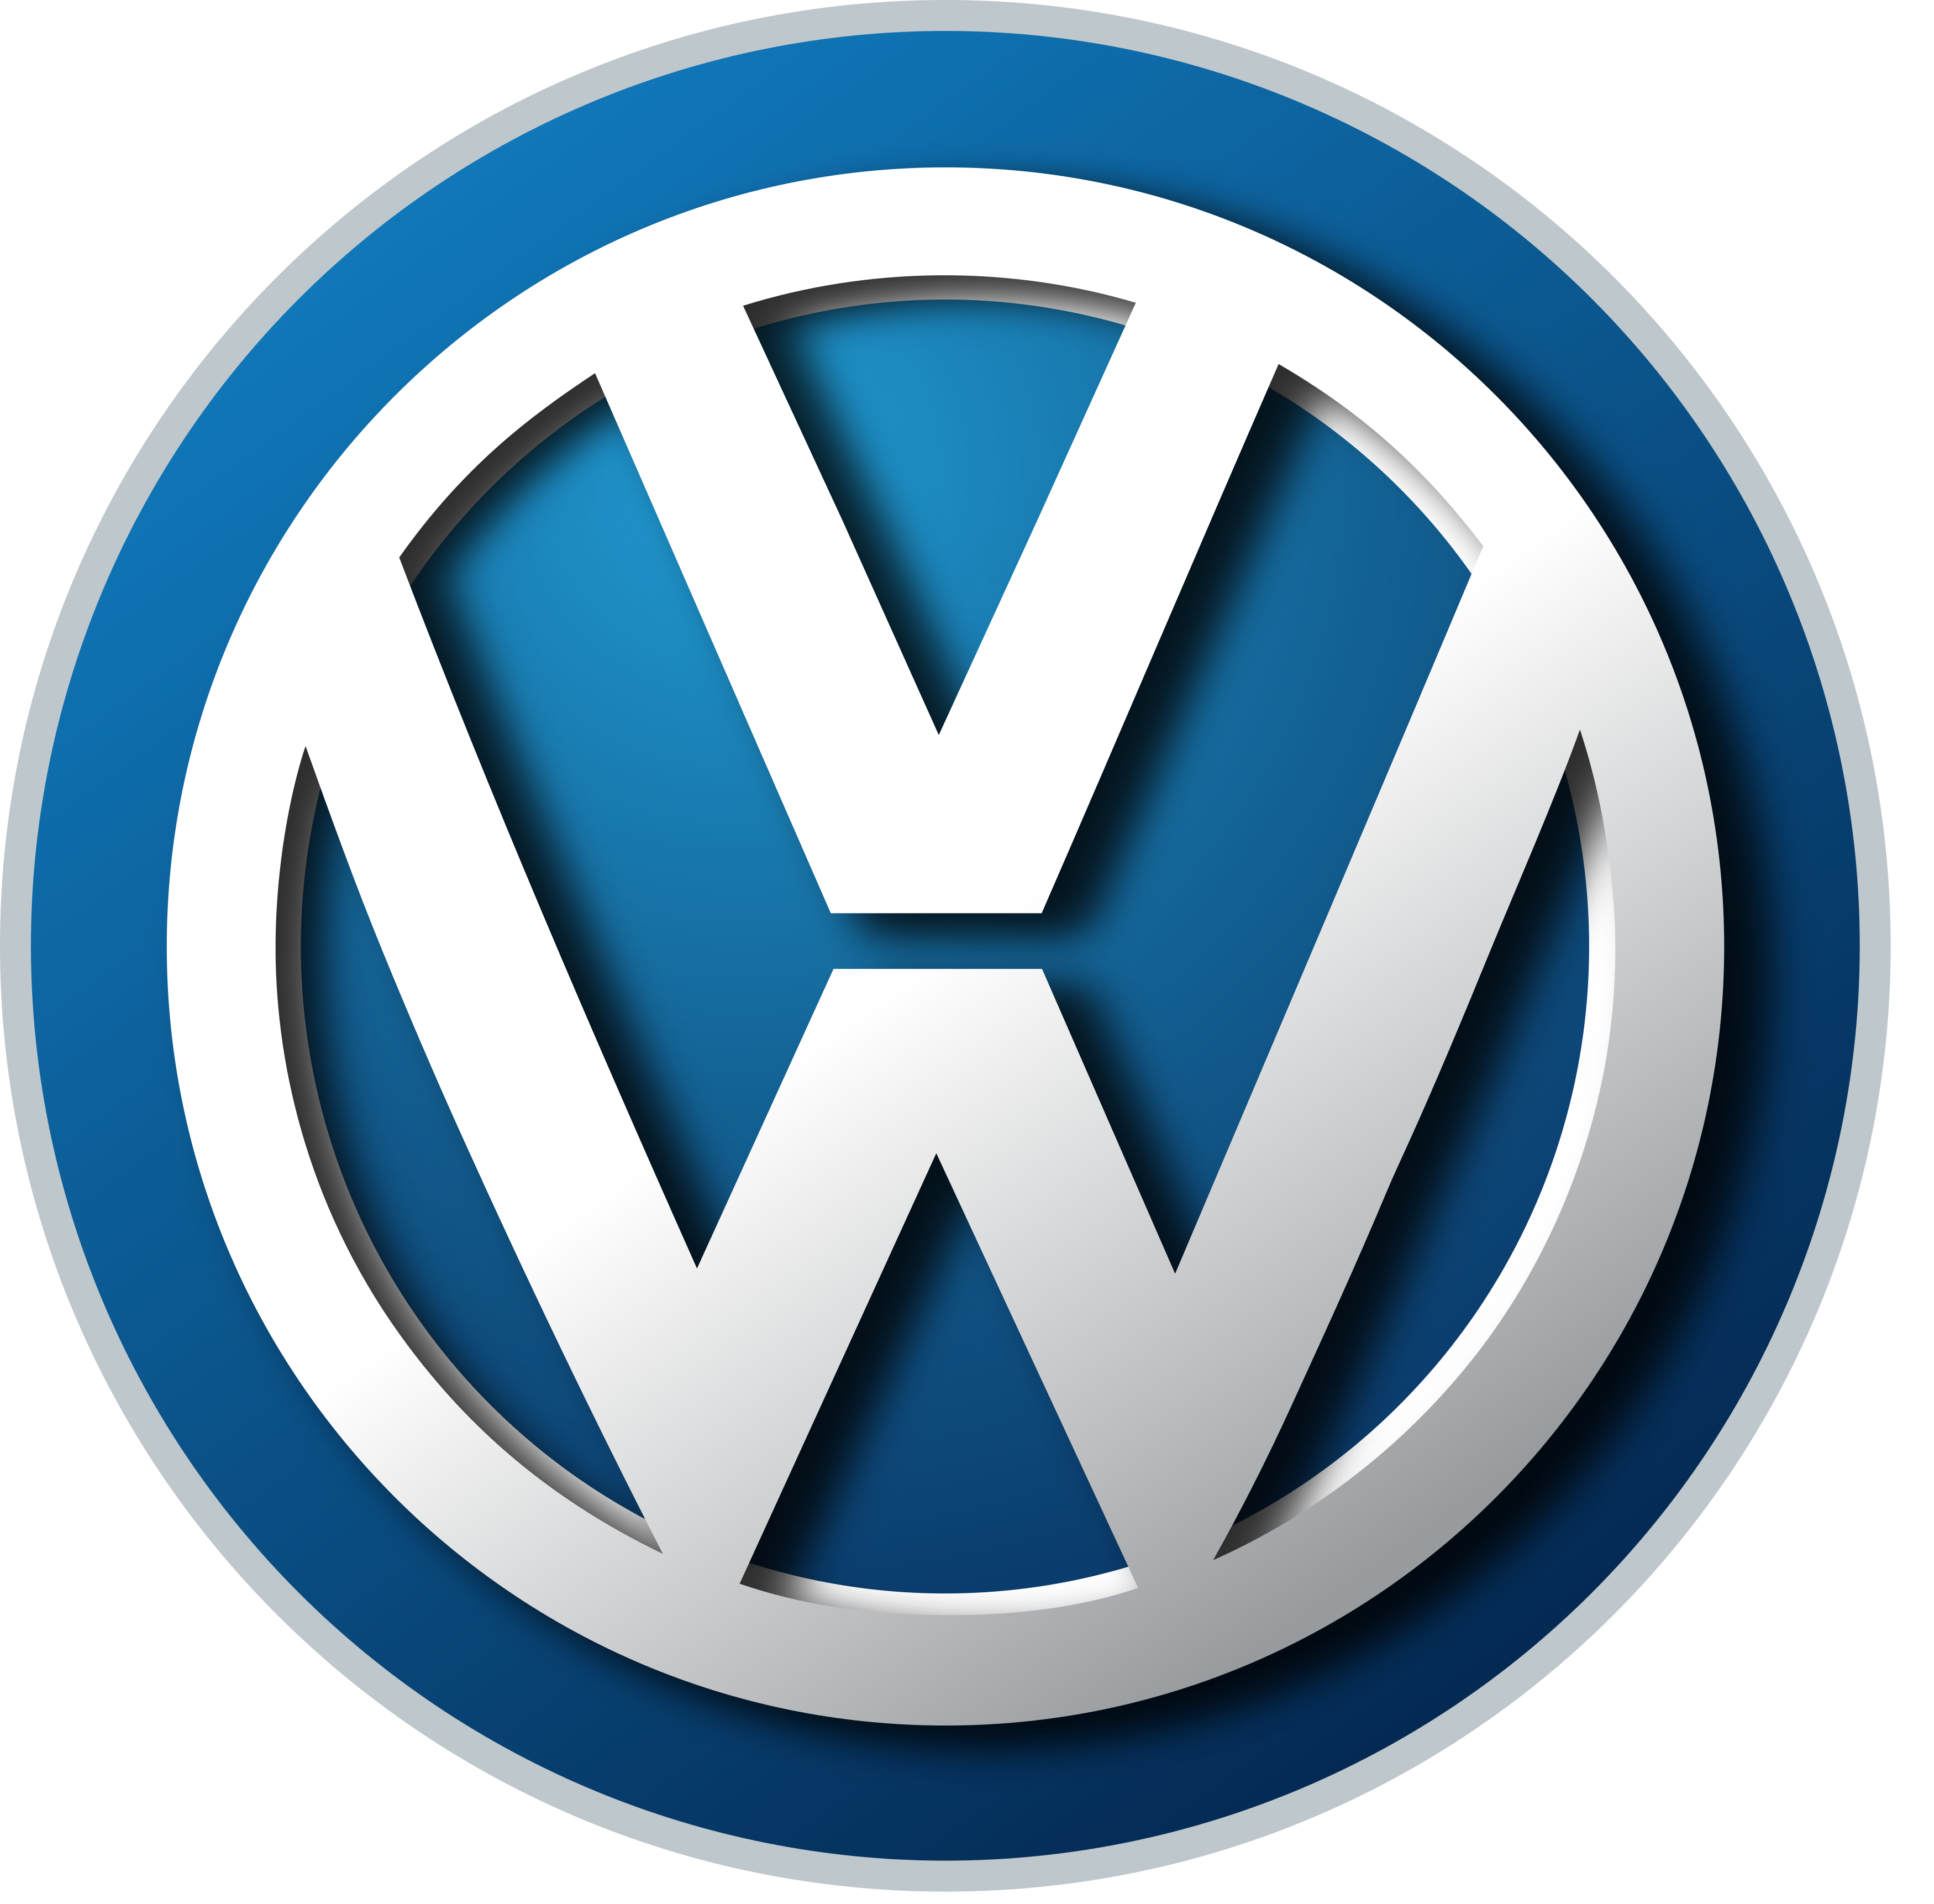 volkswagen-vw-logo